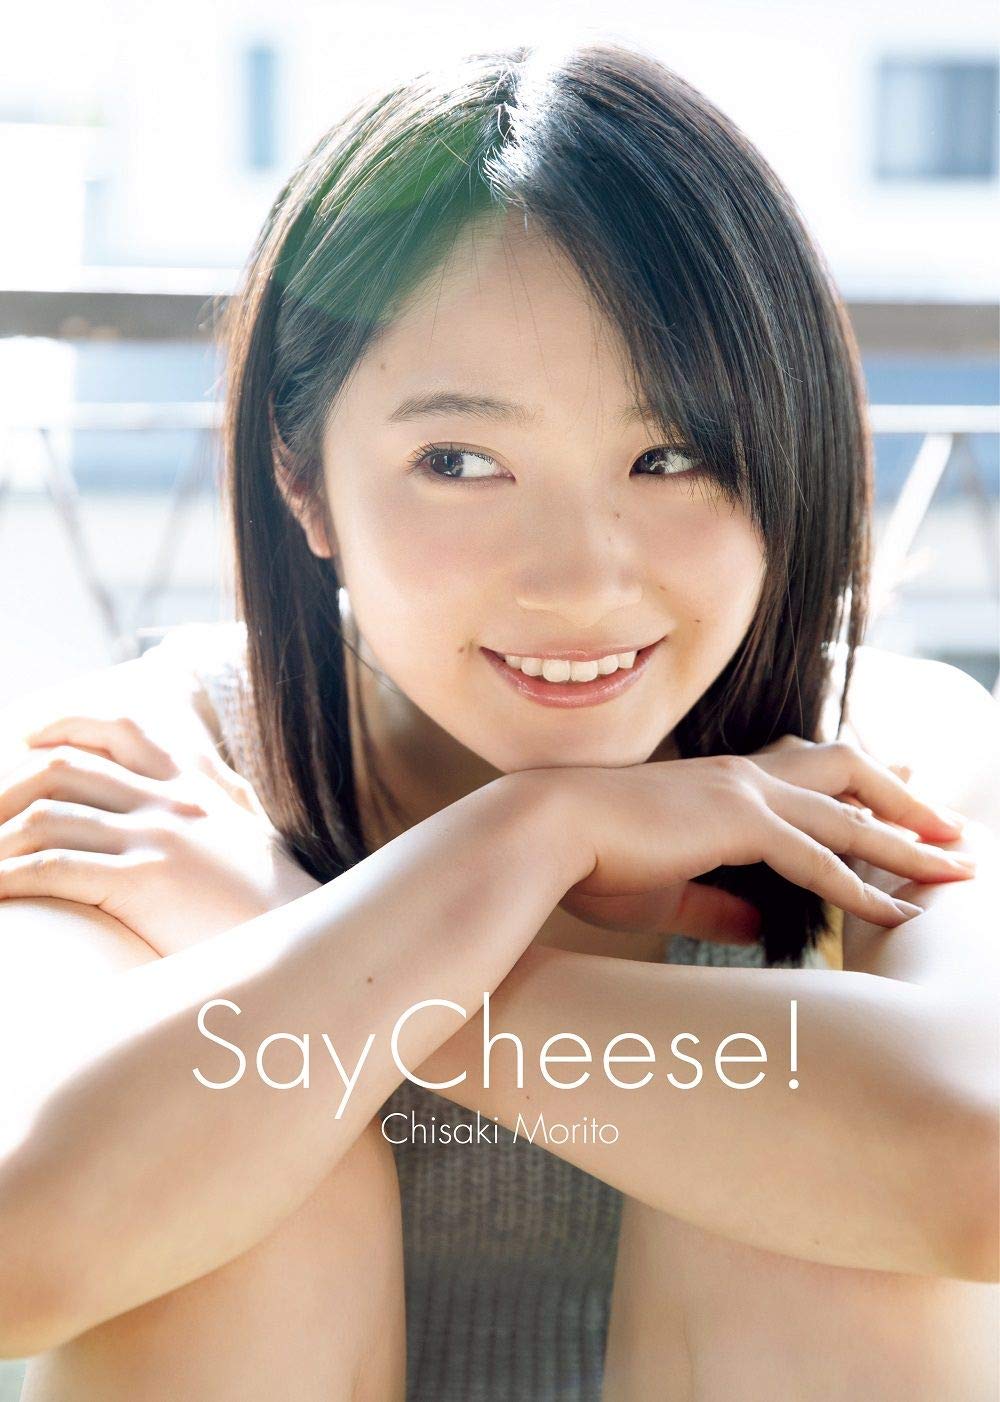 森户知沙希DVD写真集《Say Cheese!》高清完整版[1.2G]清晰度：9456kbps / 大小：1.2G / 时长：19MIN-猩猩智库 - 提供高质量日系写真